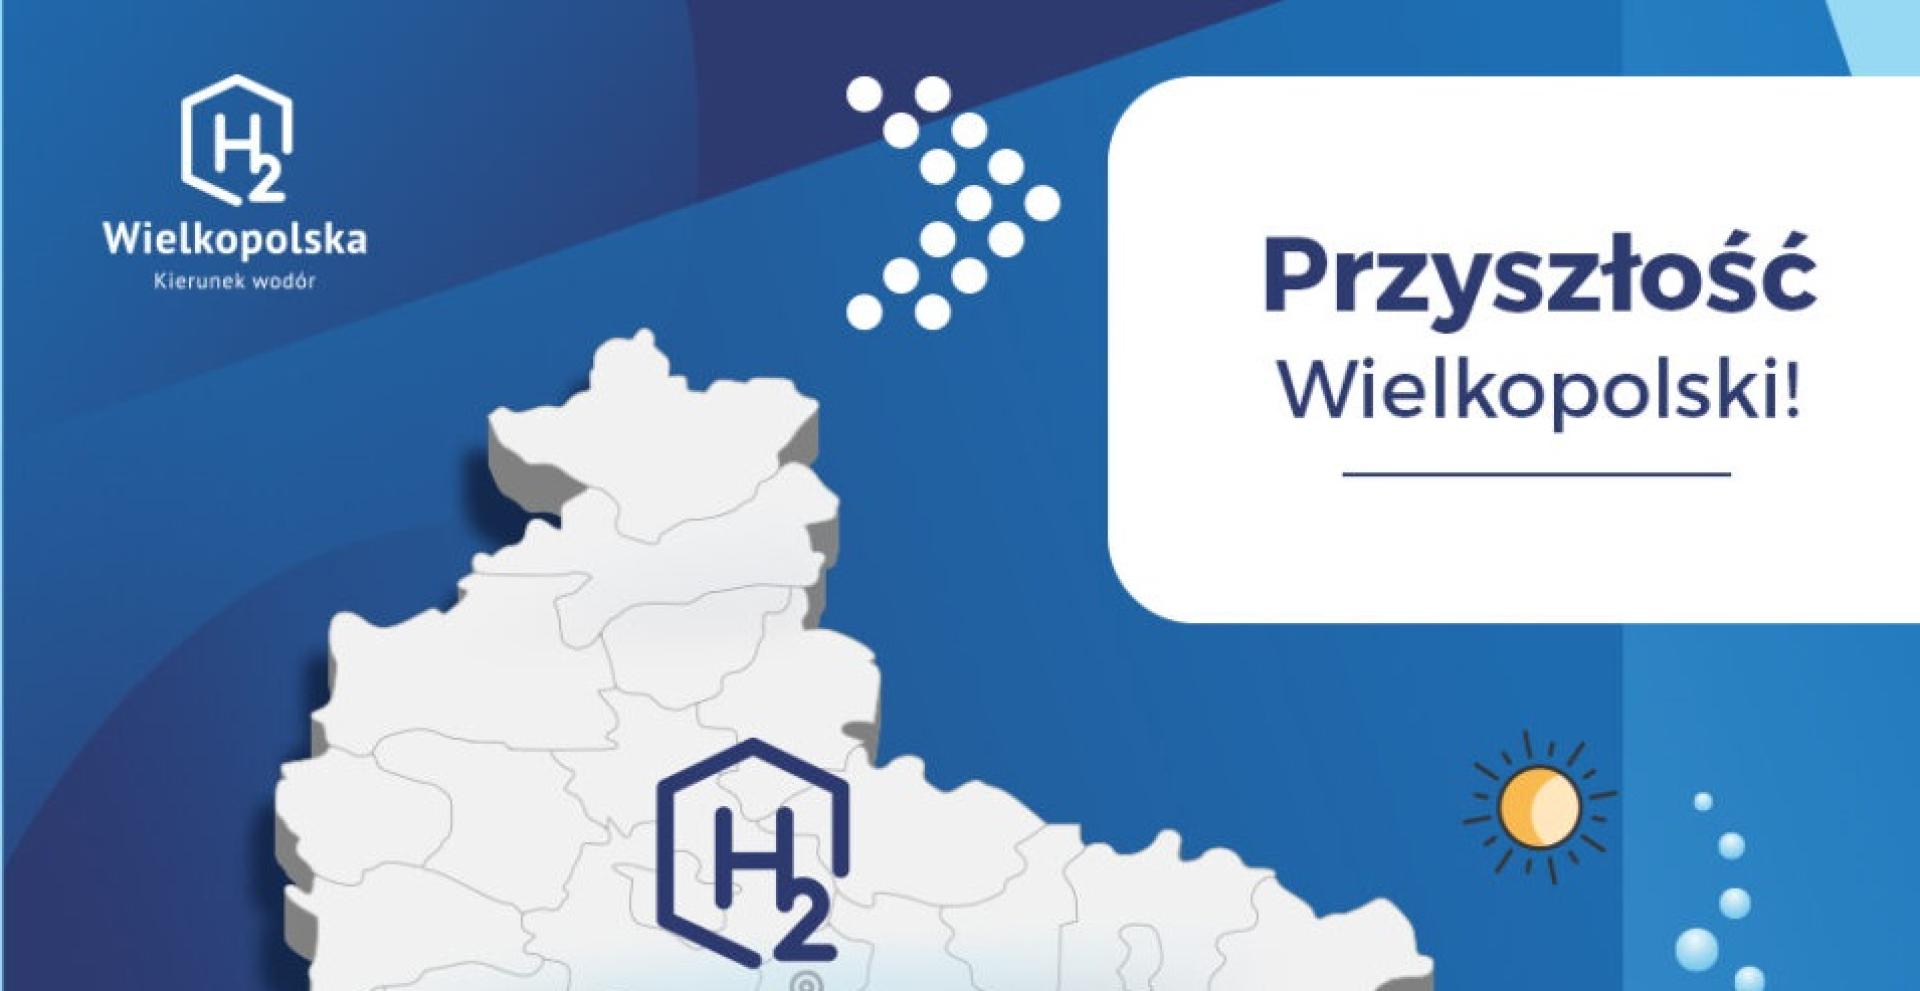 Nabór firm do stoiska H2Wielkopolska na Hannover Messe 2022 - zobacz więcej